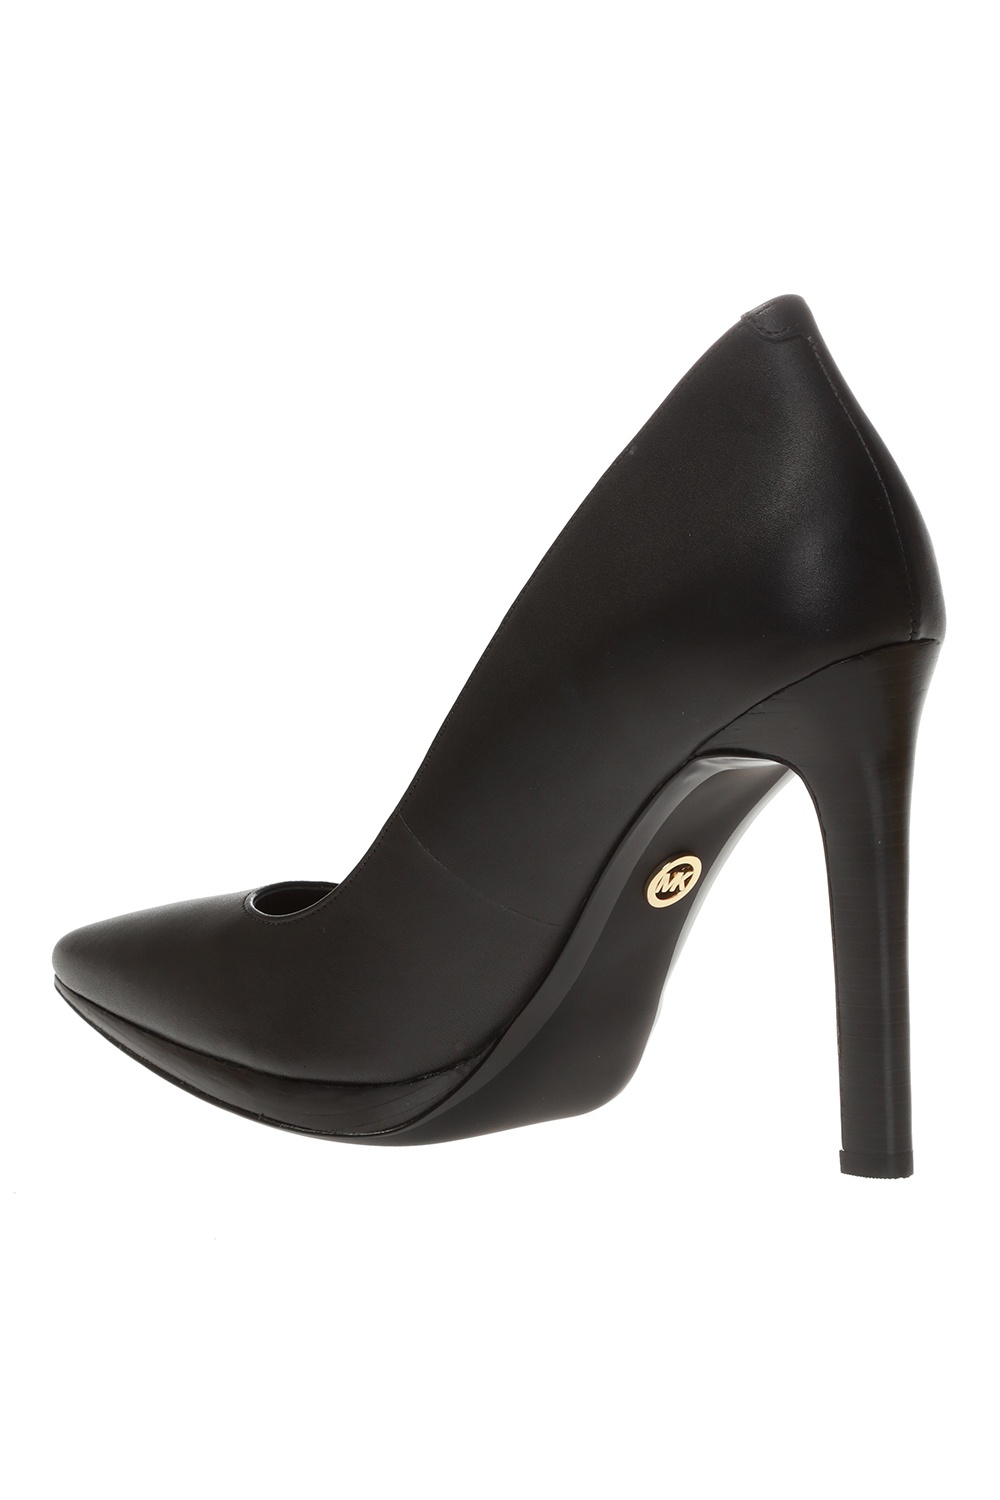 Michael Michael Kors 'Brielle' stiletto pumps | Women's Shoes | Vitkac